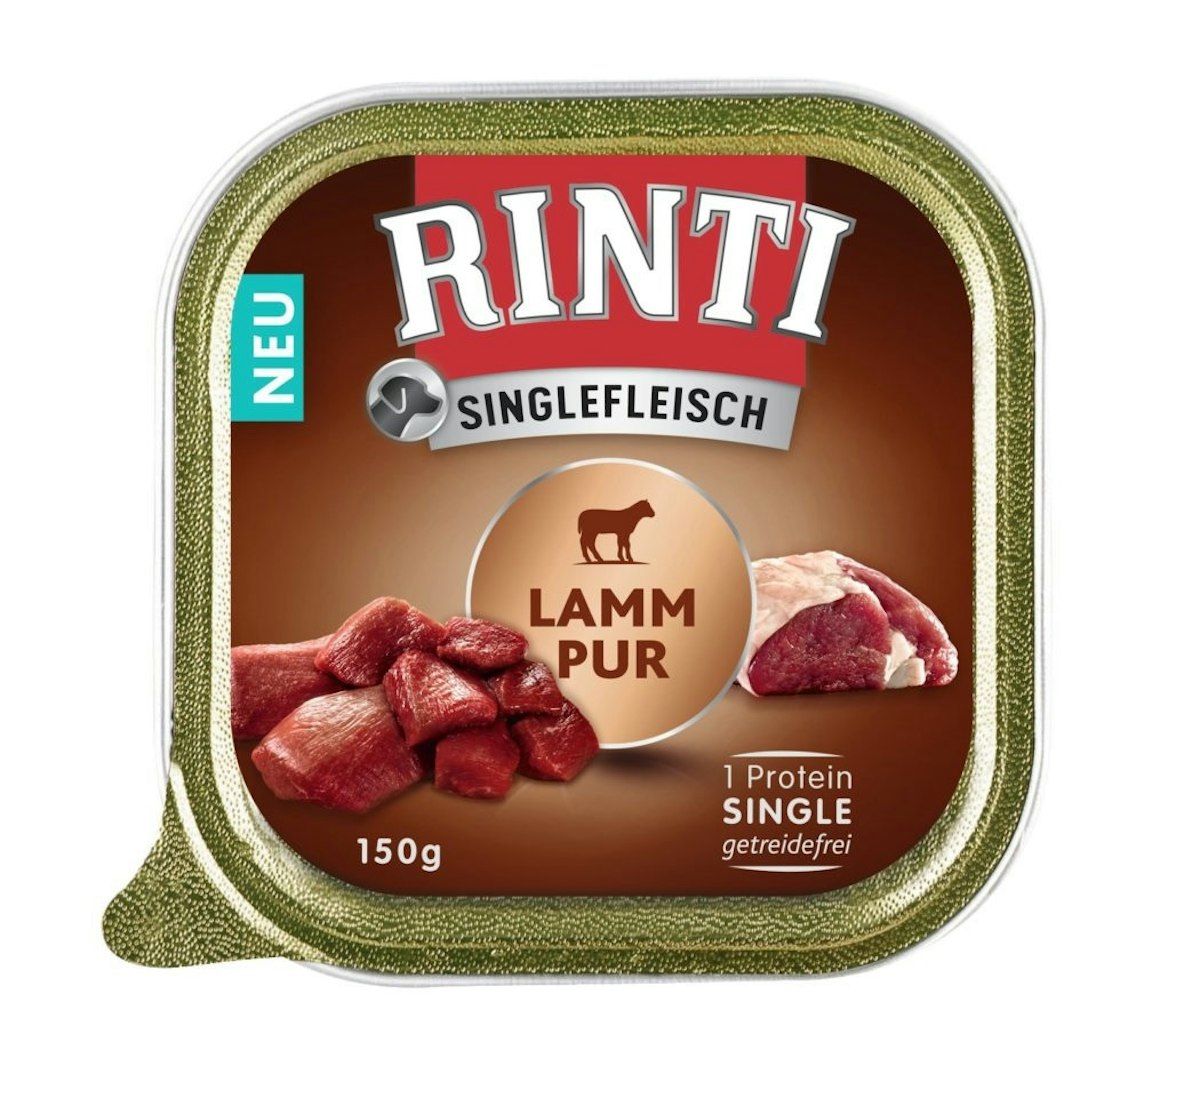 RINTI Singlefleisch 150g Hundenassfutter Sparpaket 20 x 150 Gramm Lamm Pur